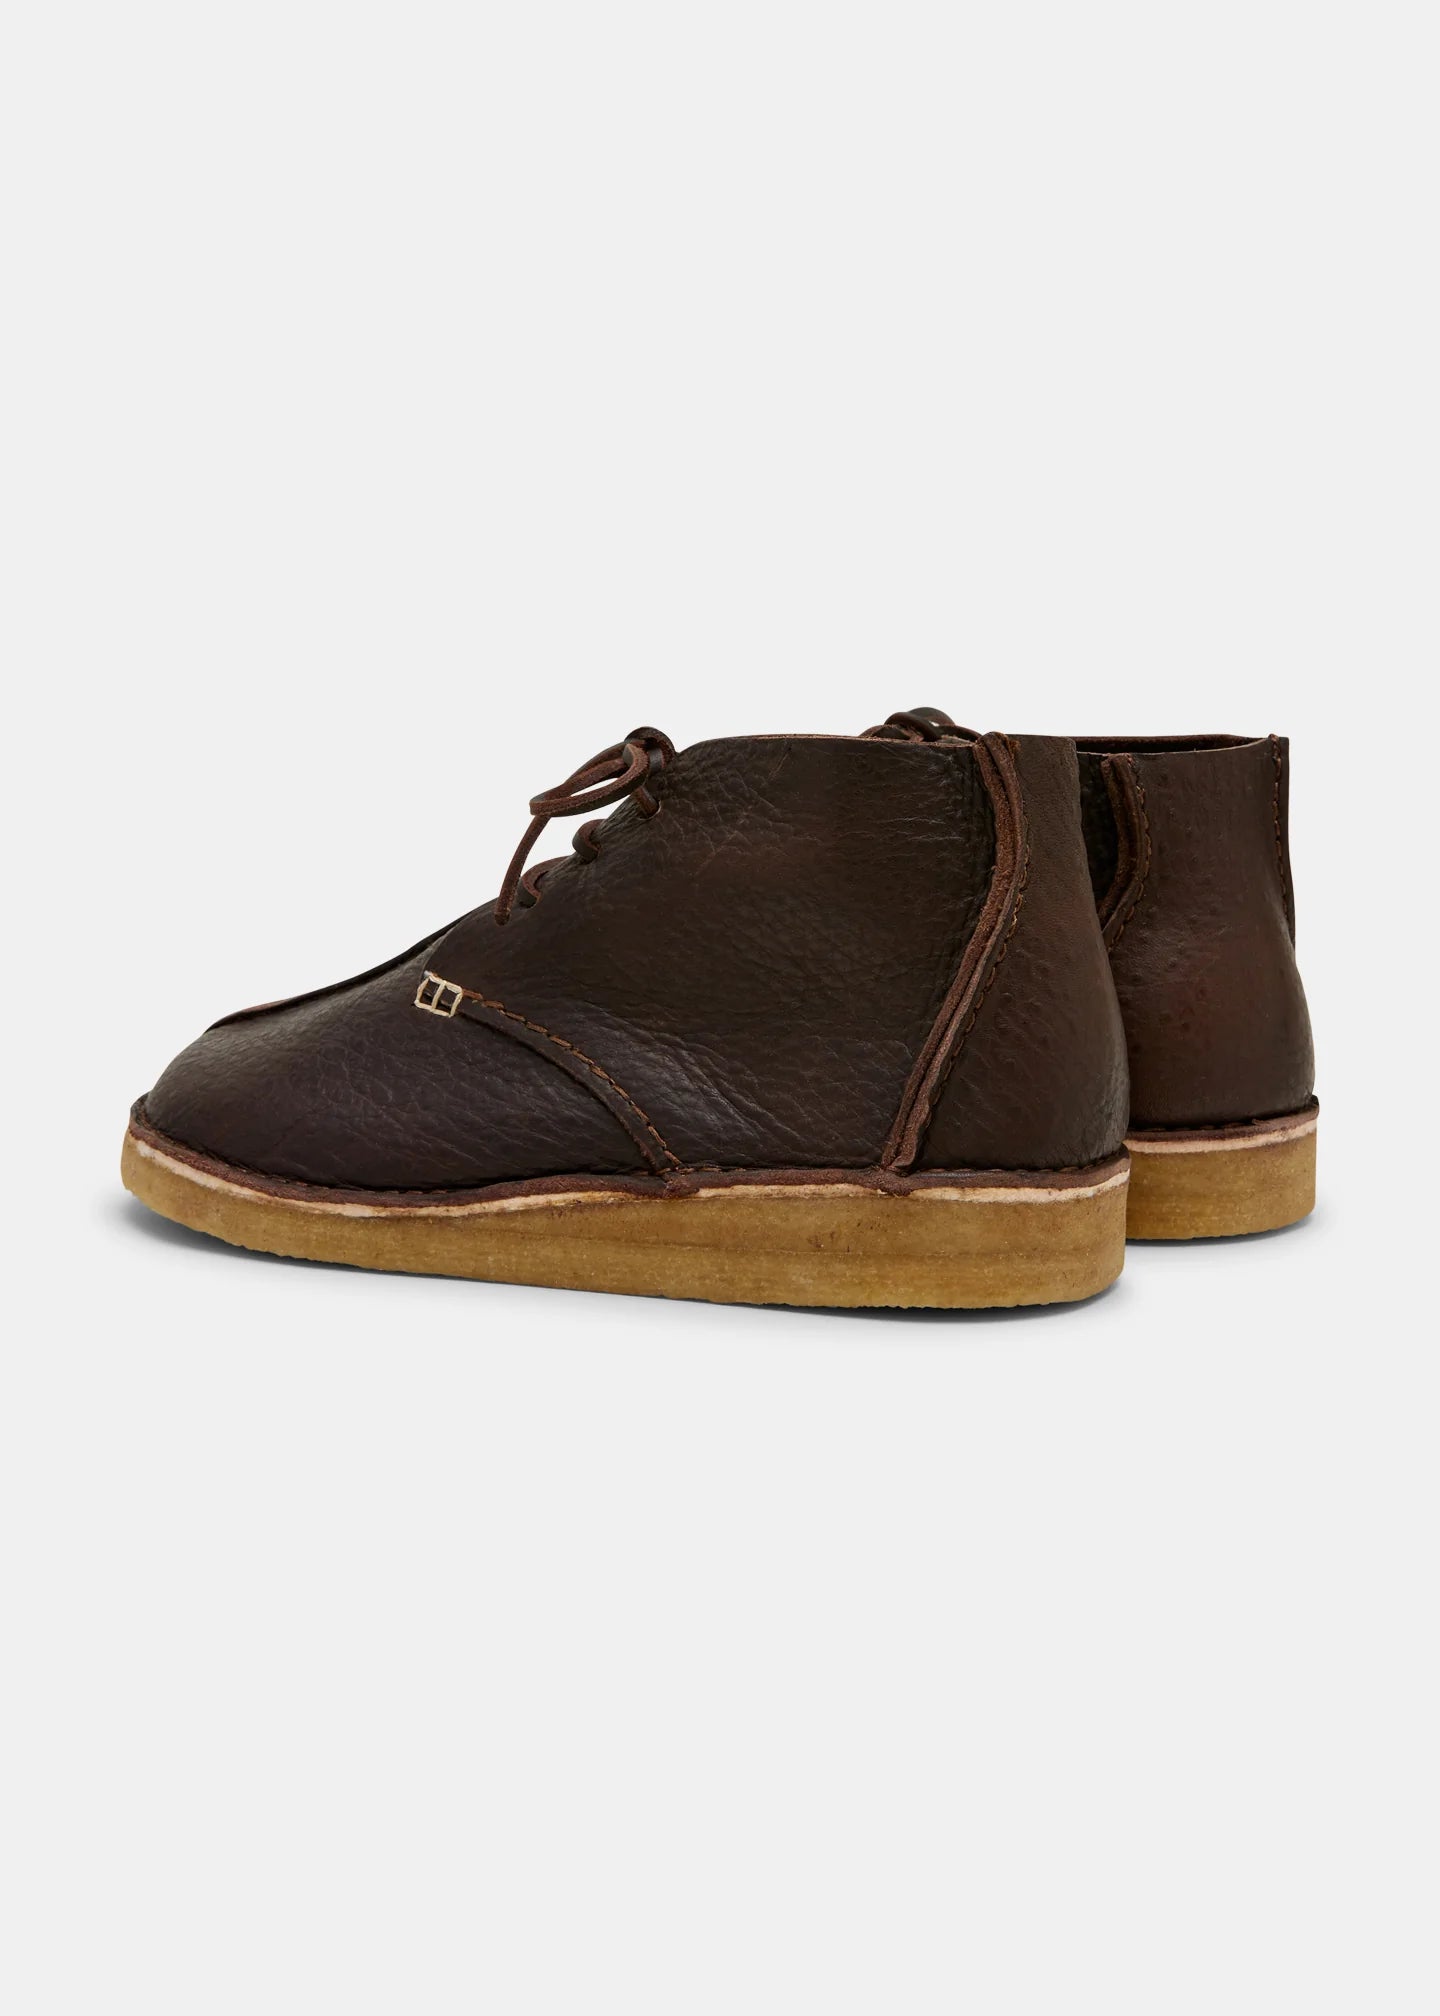 YOGI FOOTWEAR — Glenn Centre Seam Textured Ostrich Leather Boot - Dark Brown